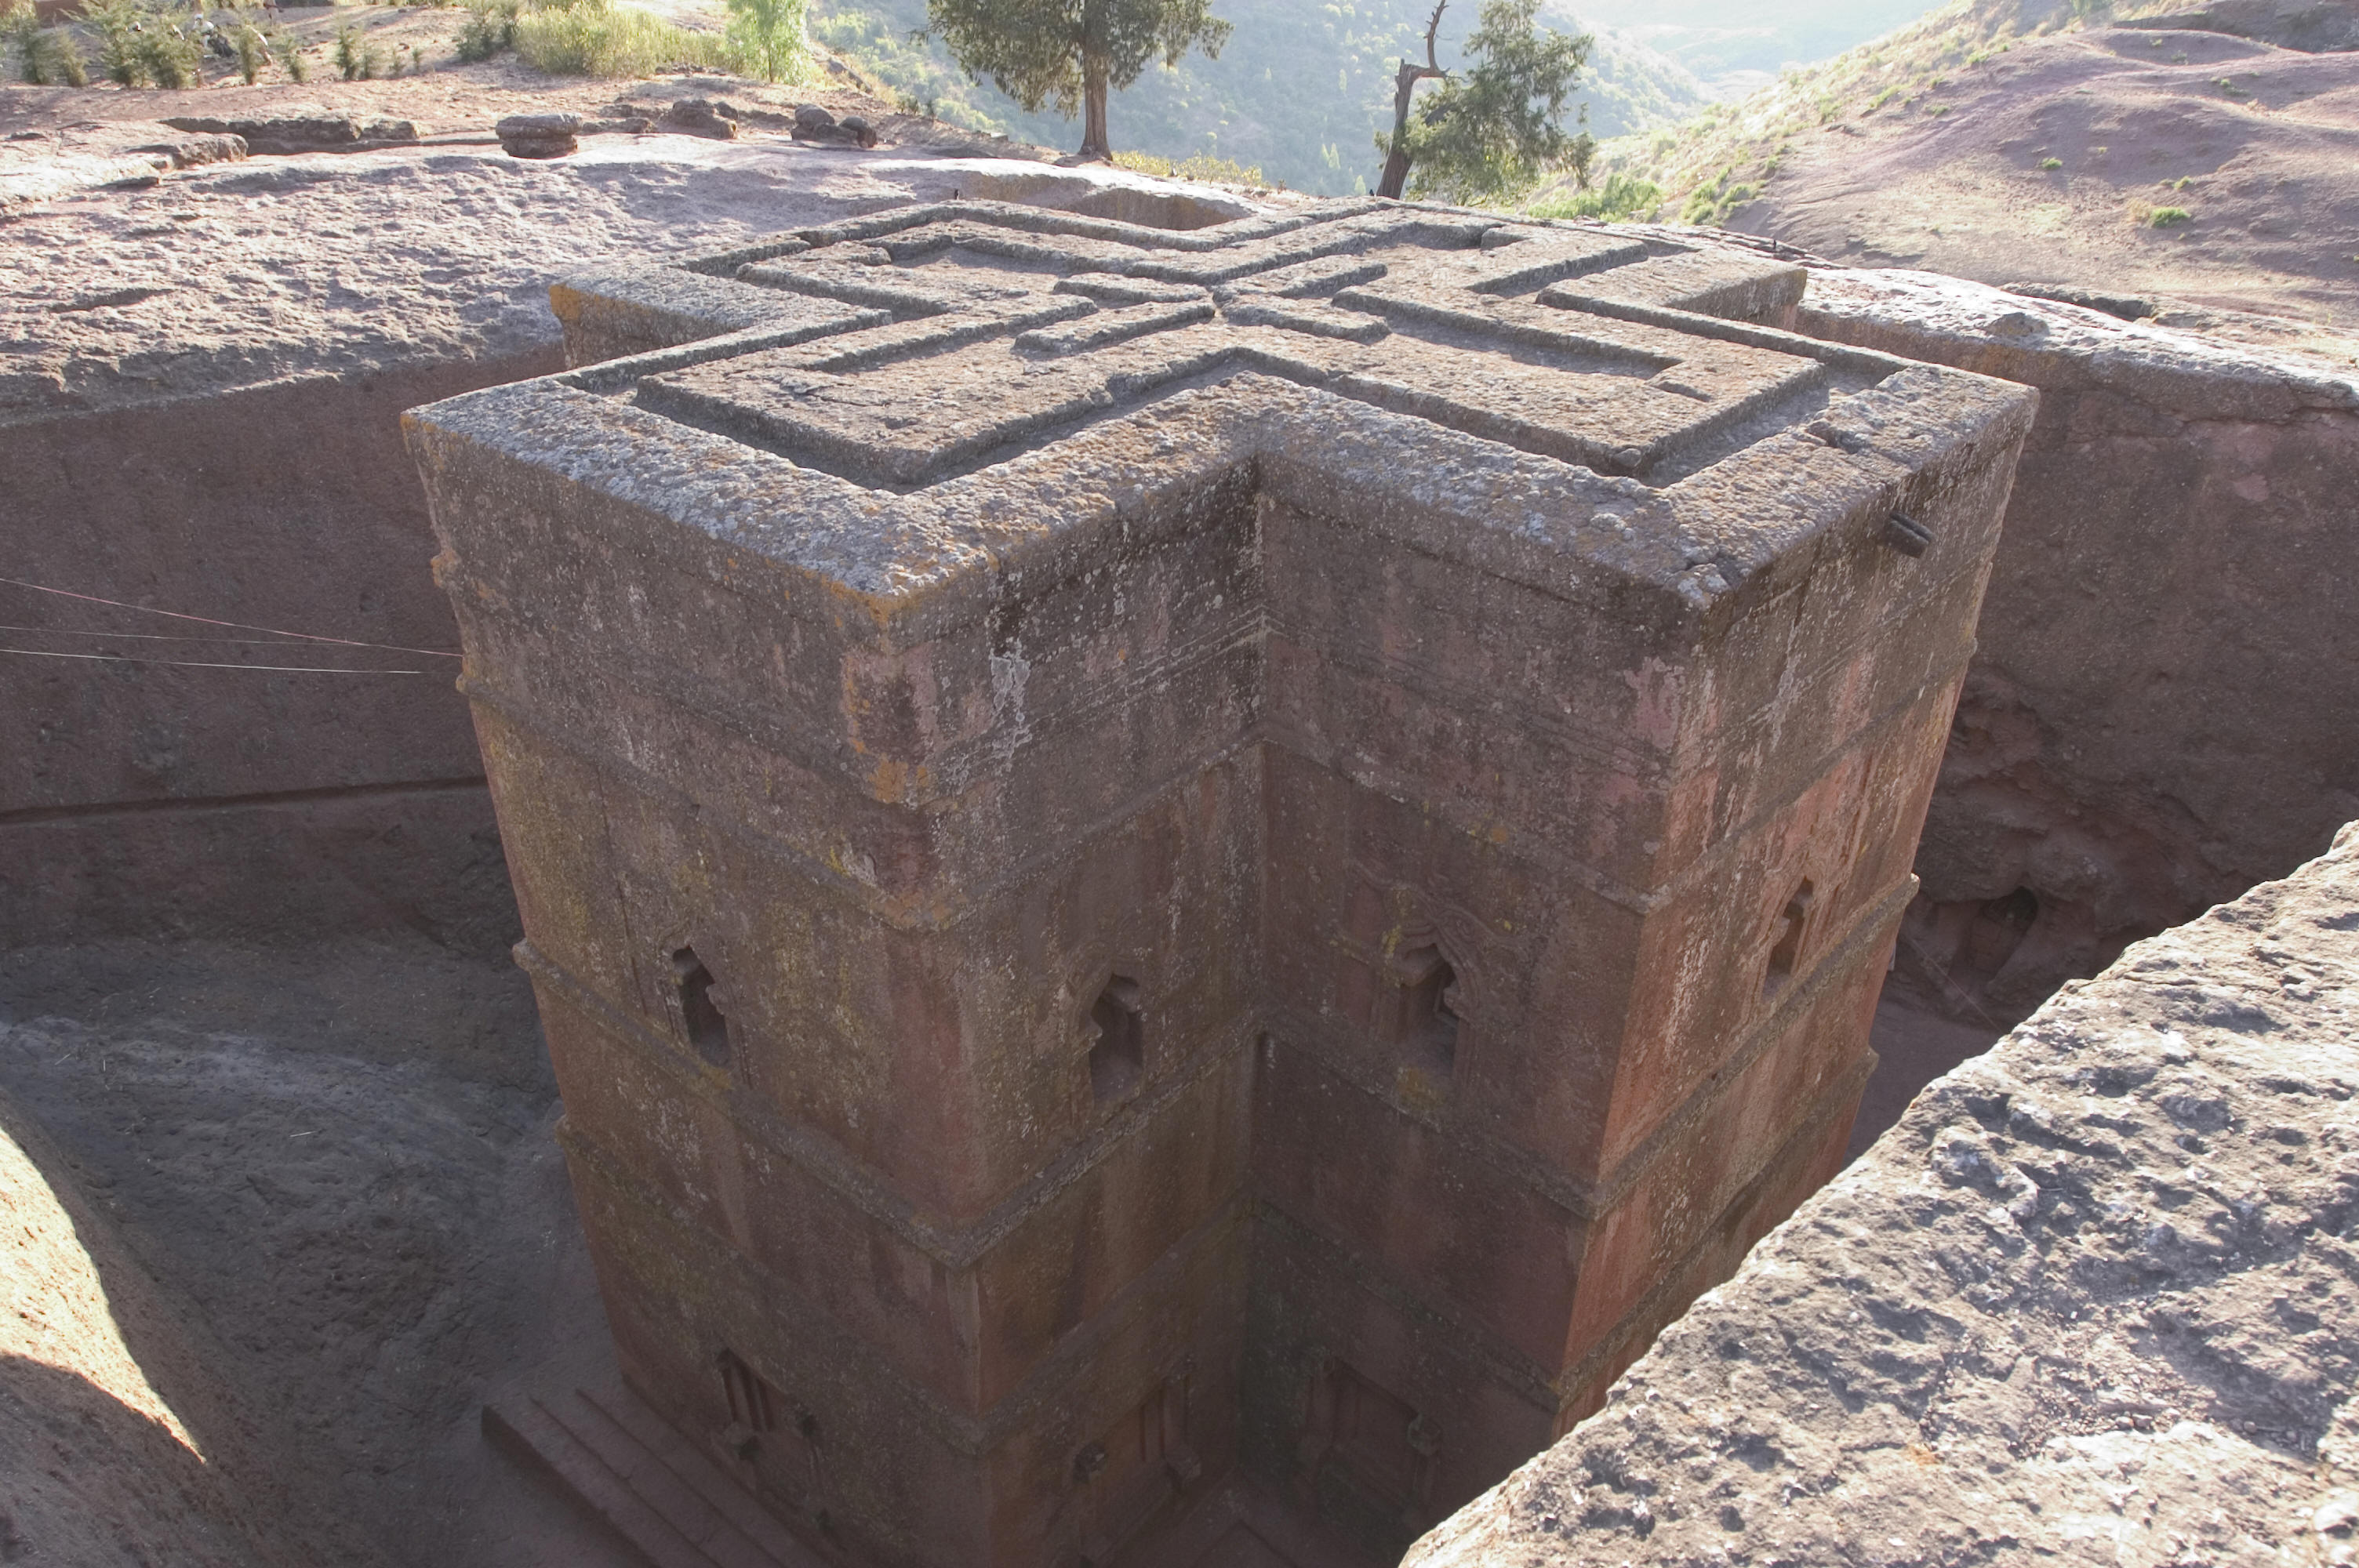 Le undici chiese rupestri di Lalibela in Etiopia: dal 1968 inserite dall’Unesco tra i patrimoni dell’umanità